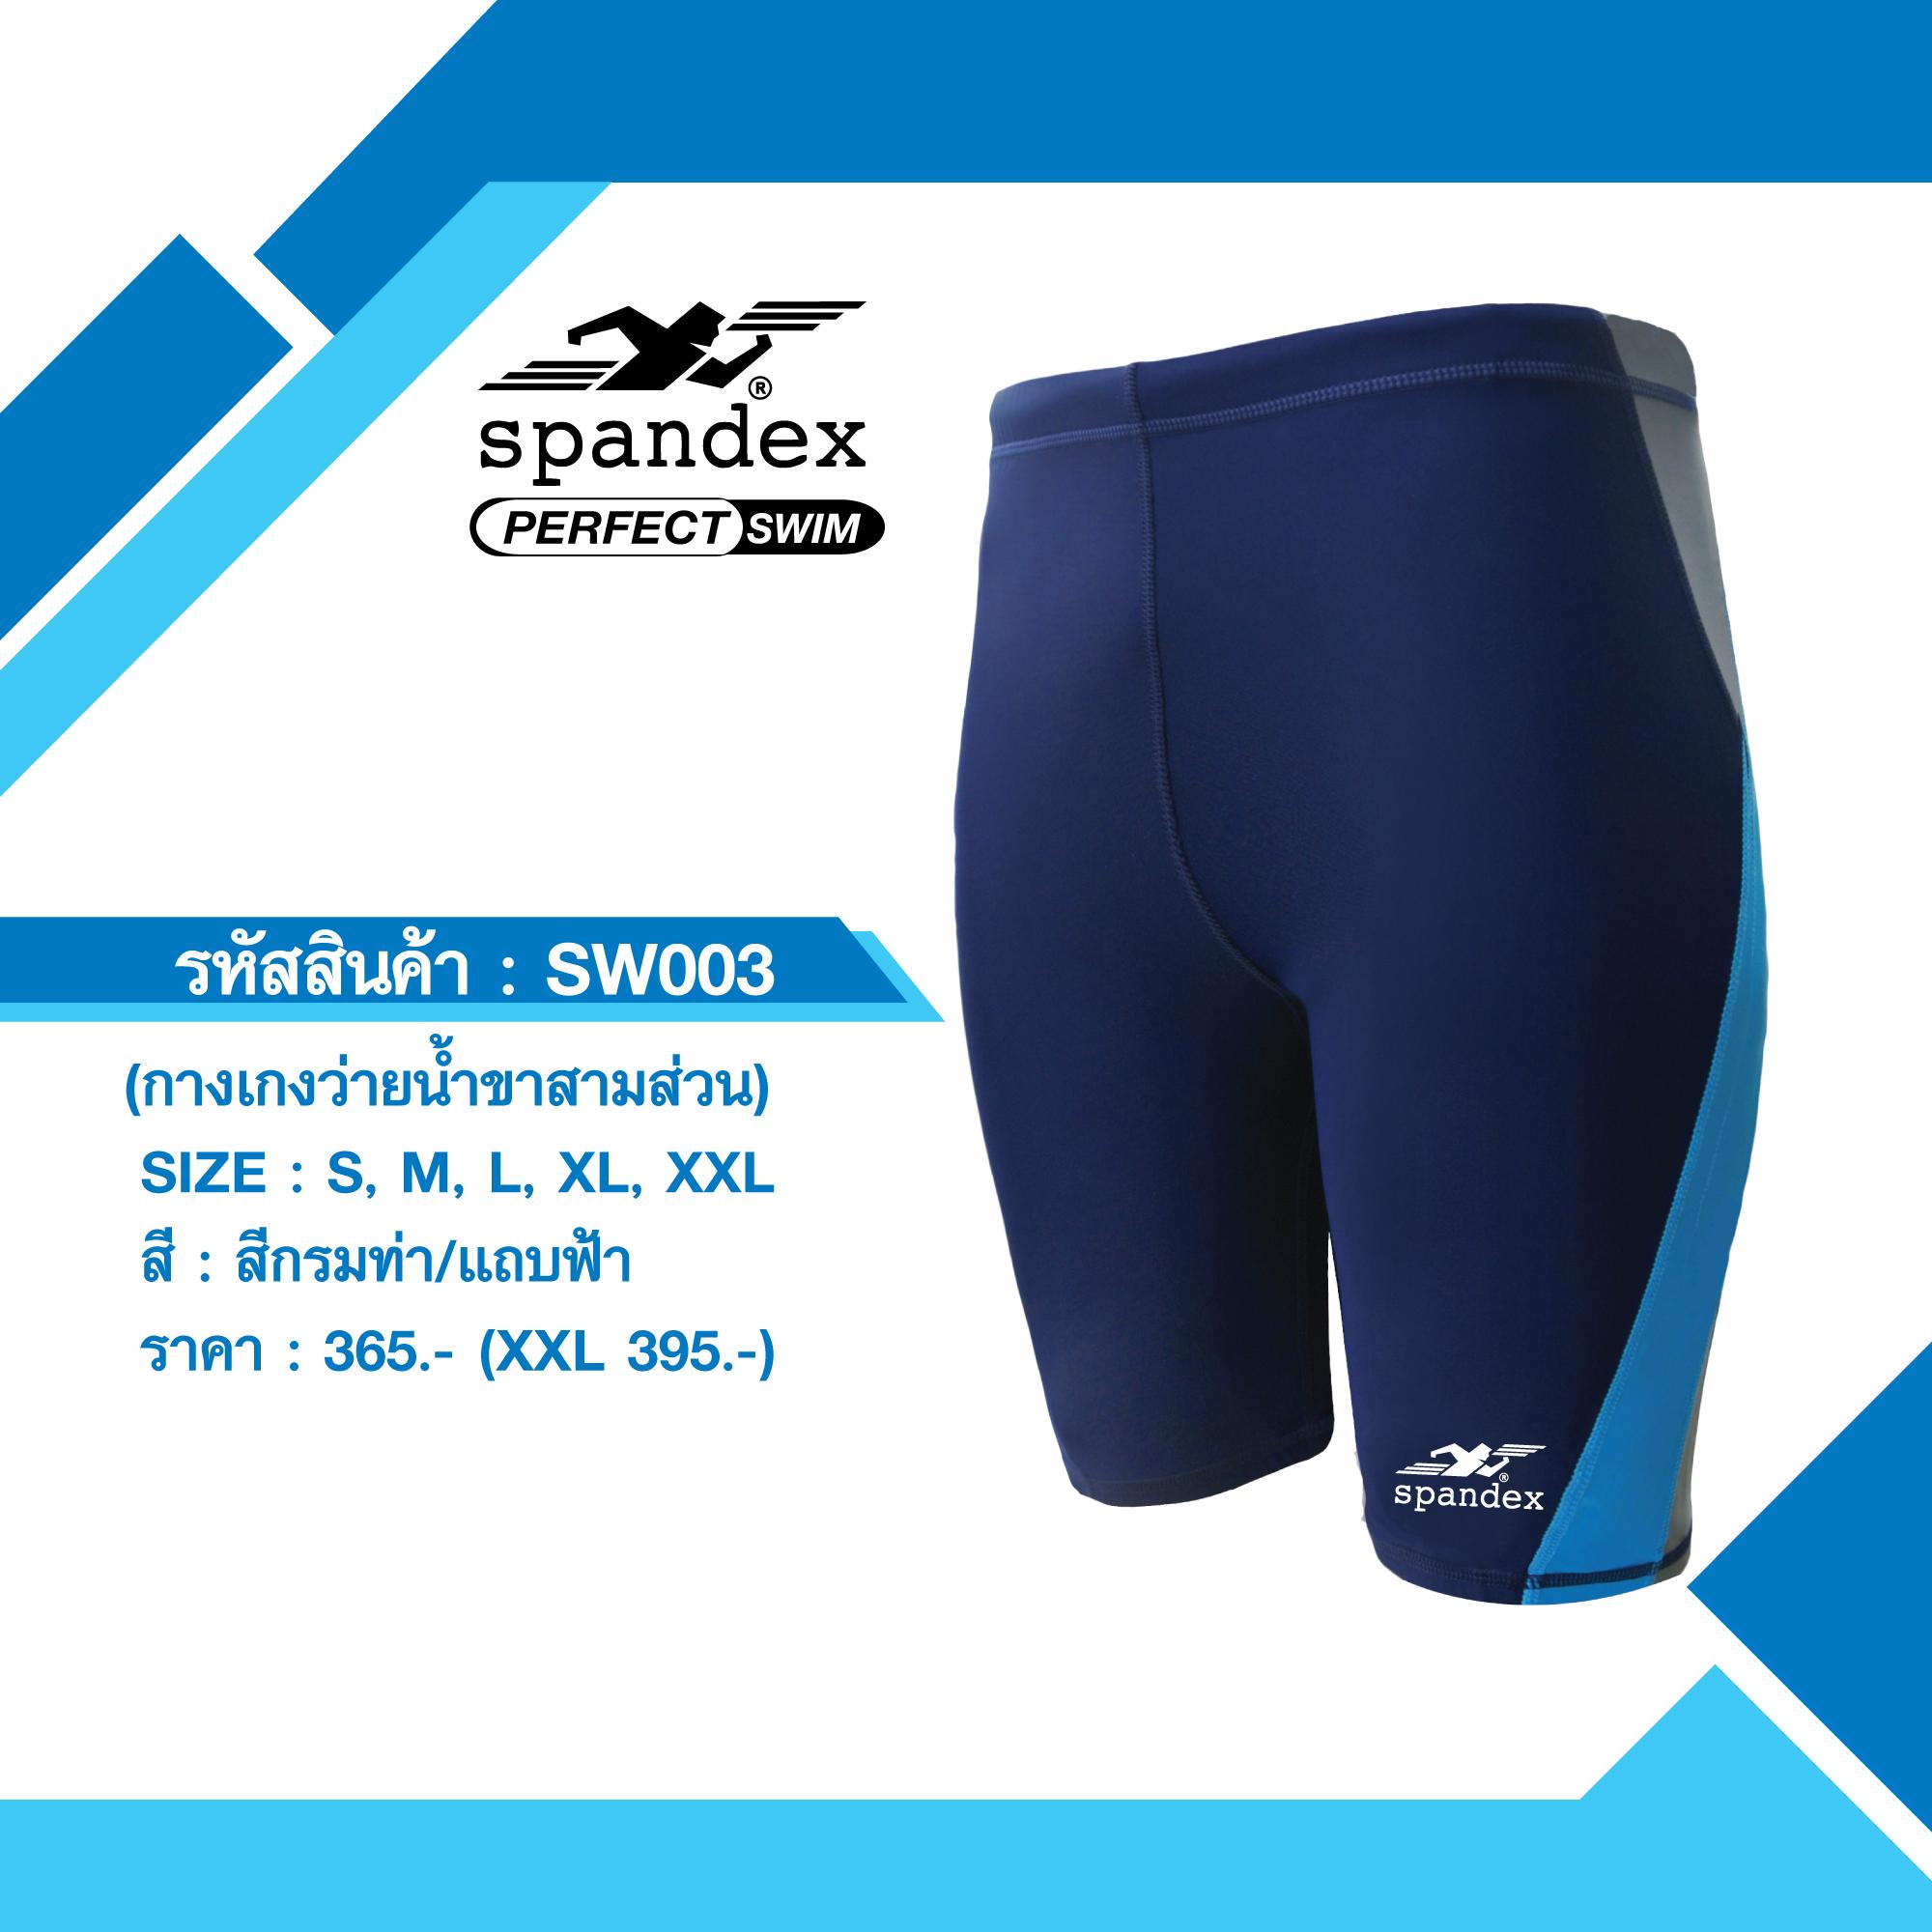 Spandex SW003 กางเกงว่ายน้ำขาสามส่วน สีกรมท่า/แถบฟ้า